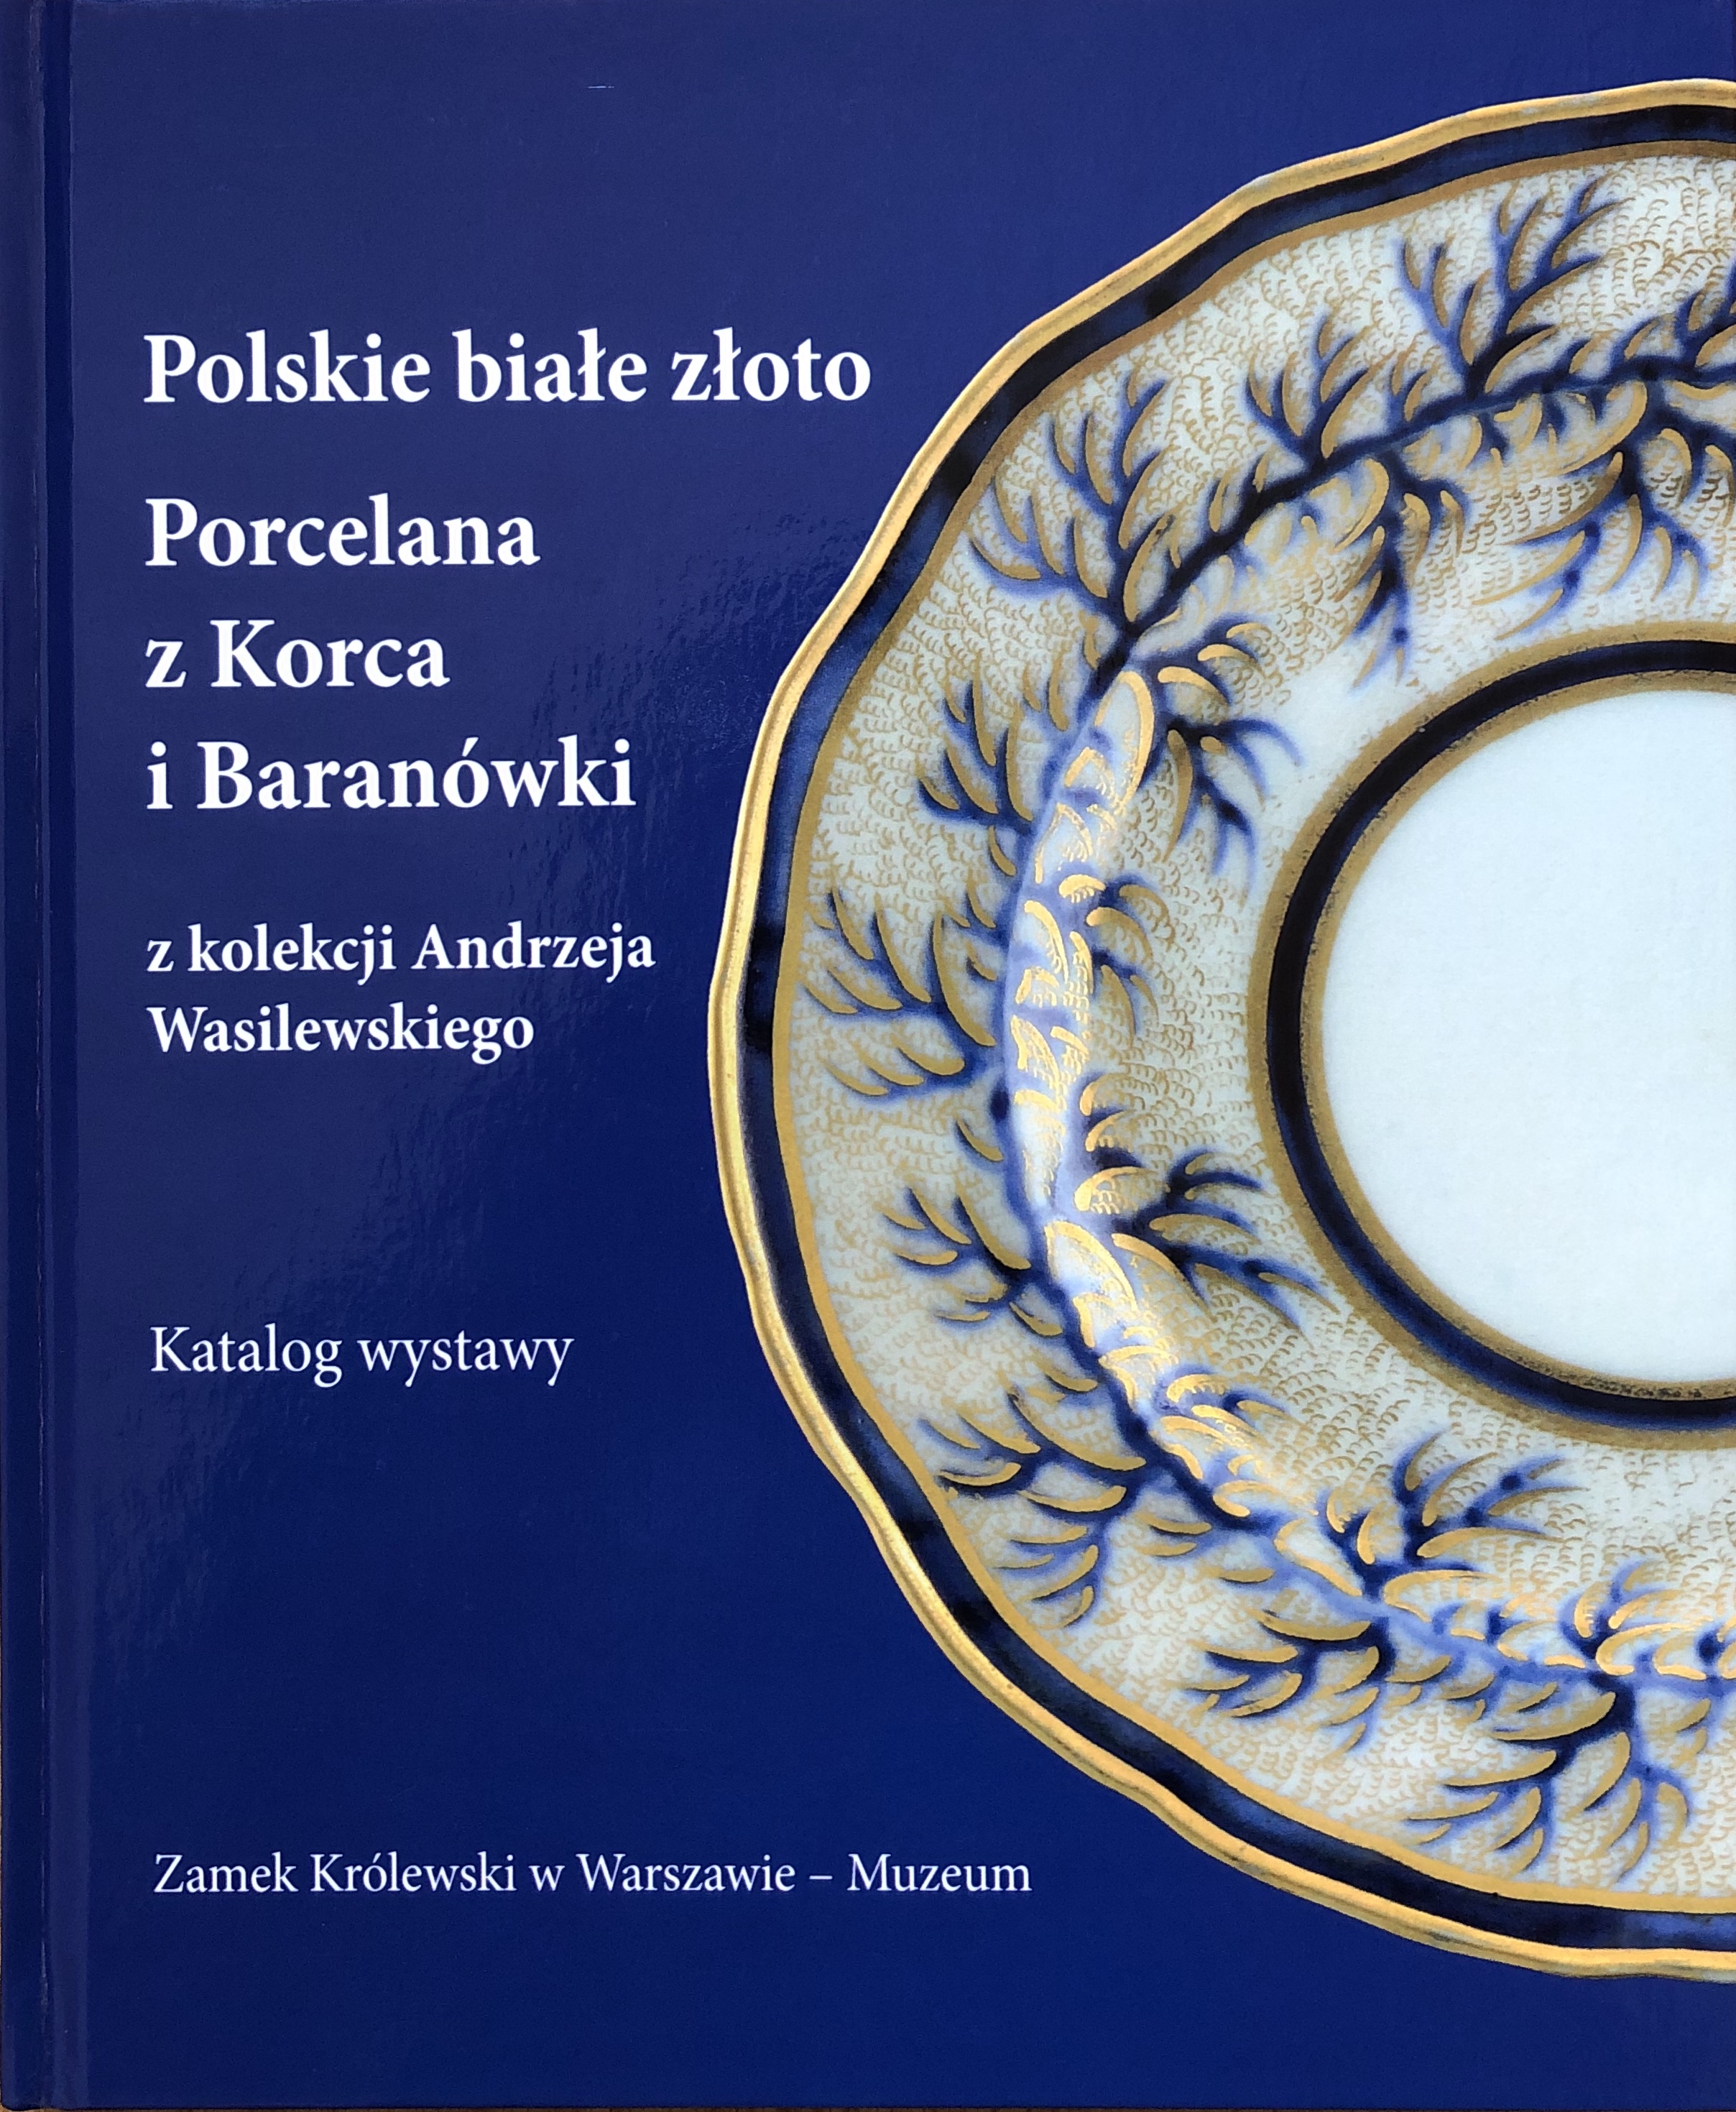 Katalog wystawy "W świecie porcelany"